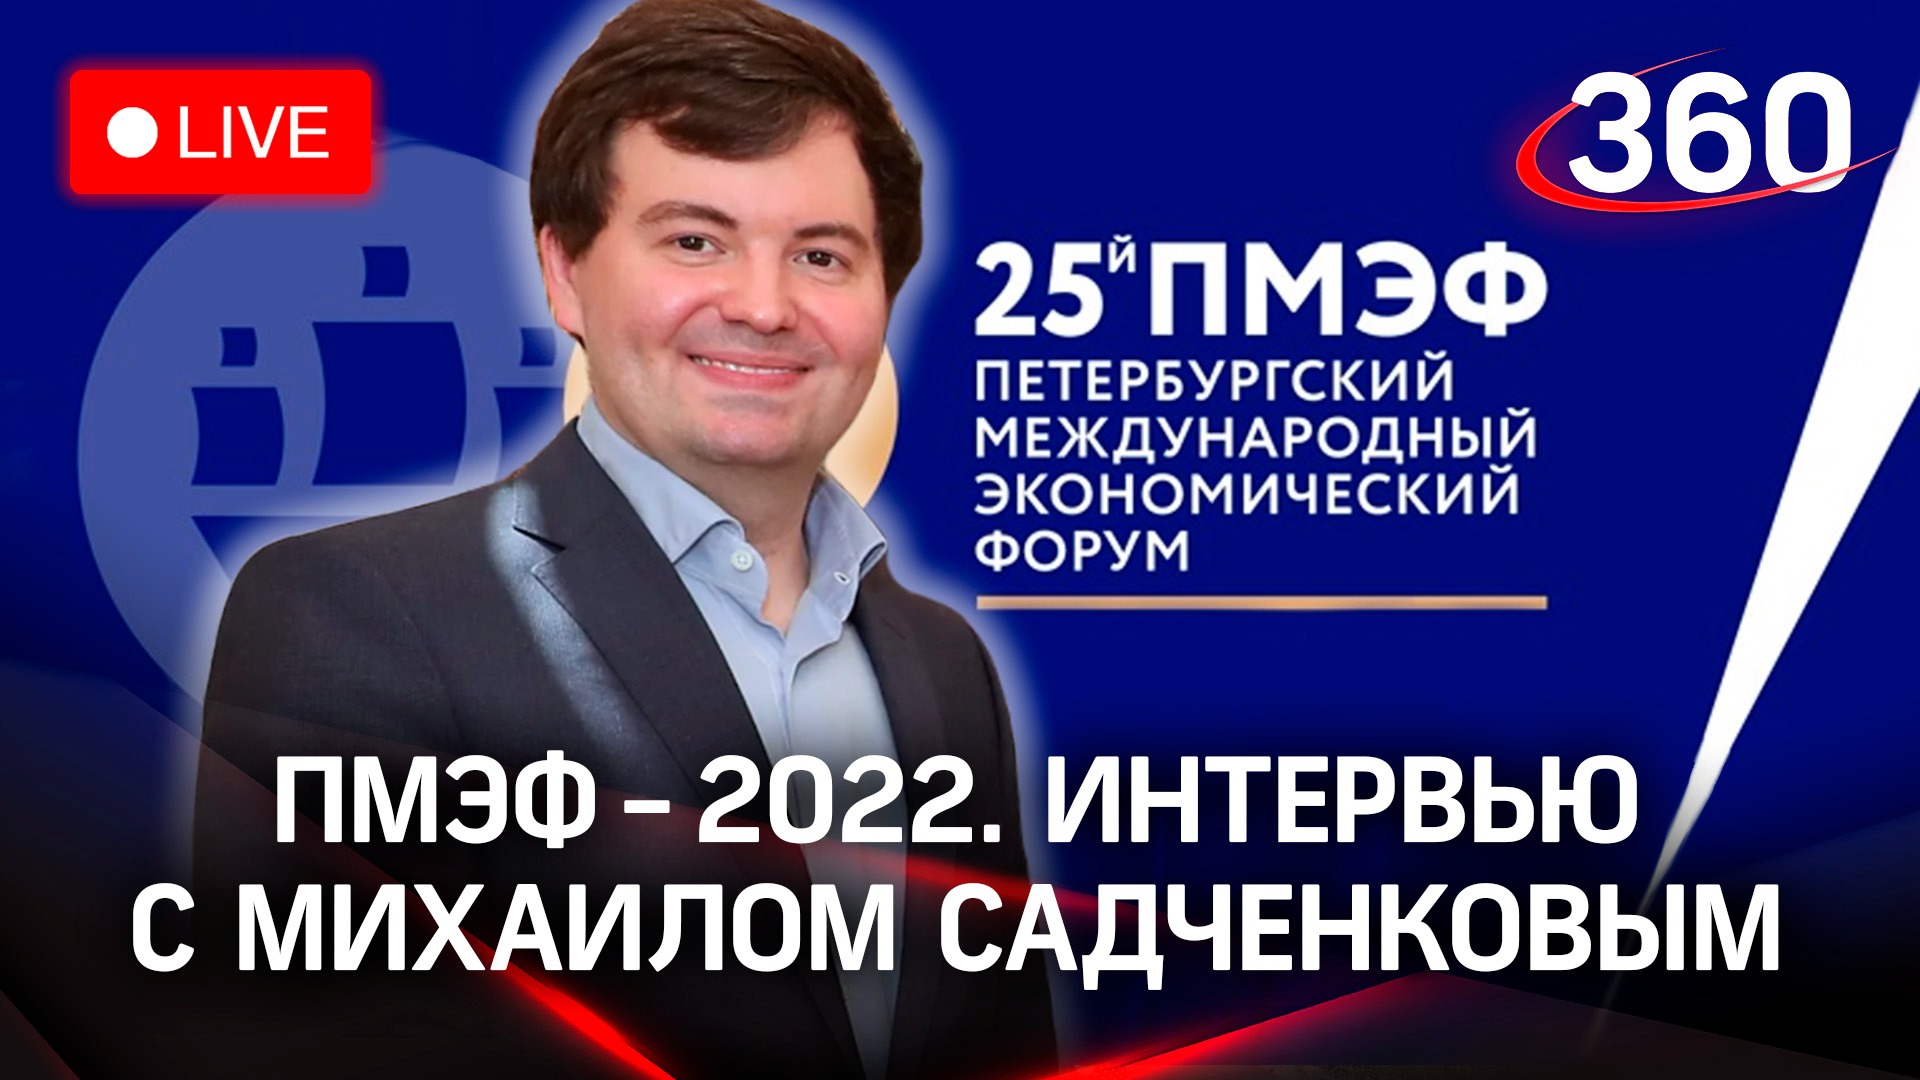 ПМЭФ-2022: интервью с Михаилом Садченковым, генеральным директором бренда «Сделано в России»